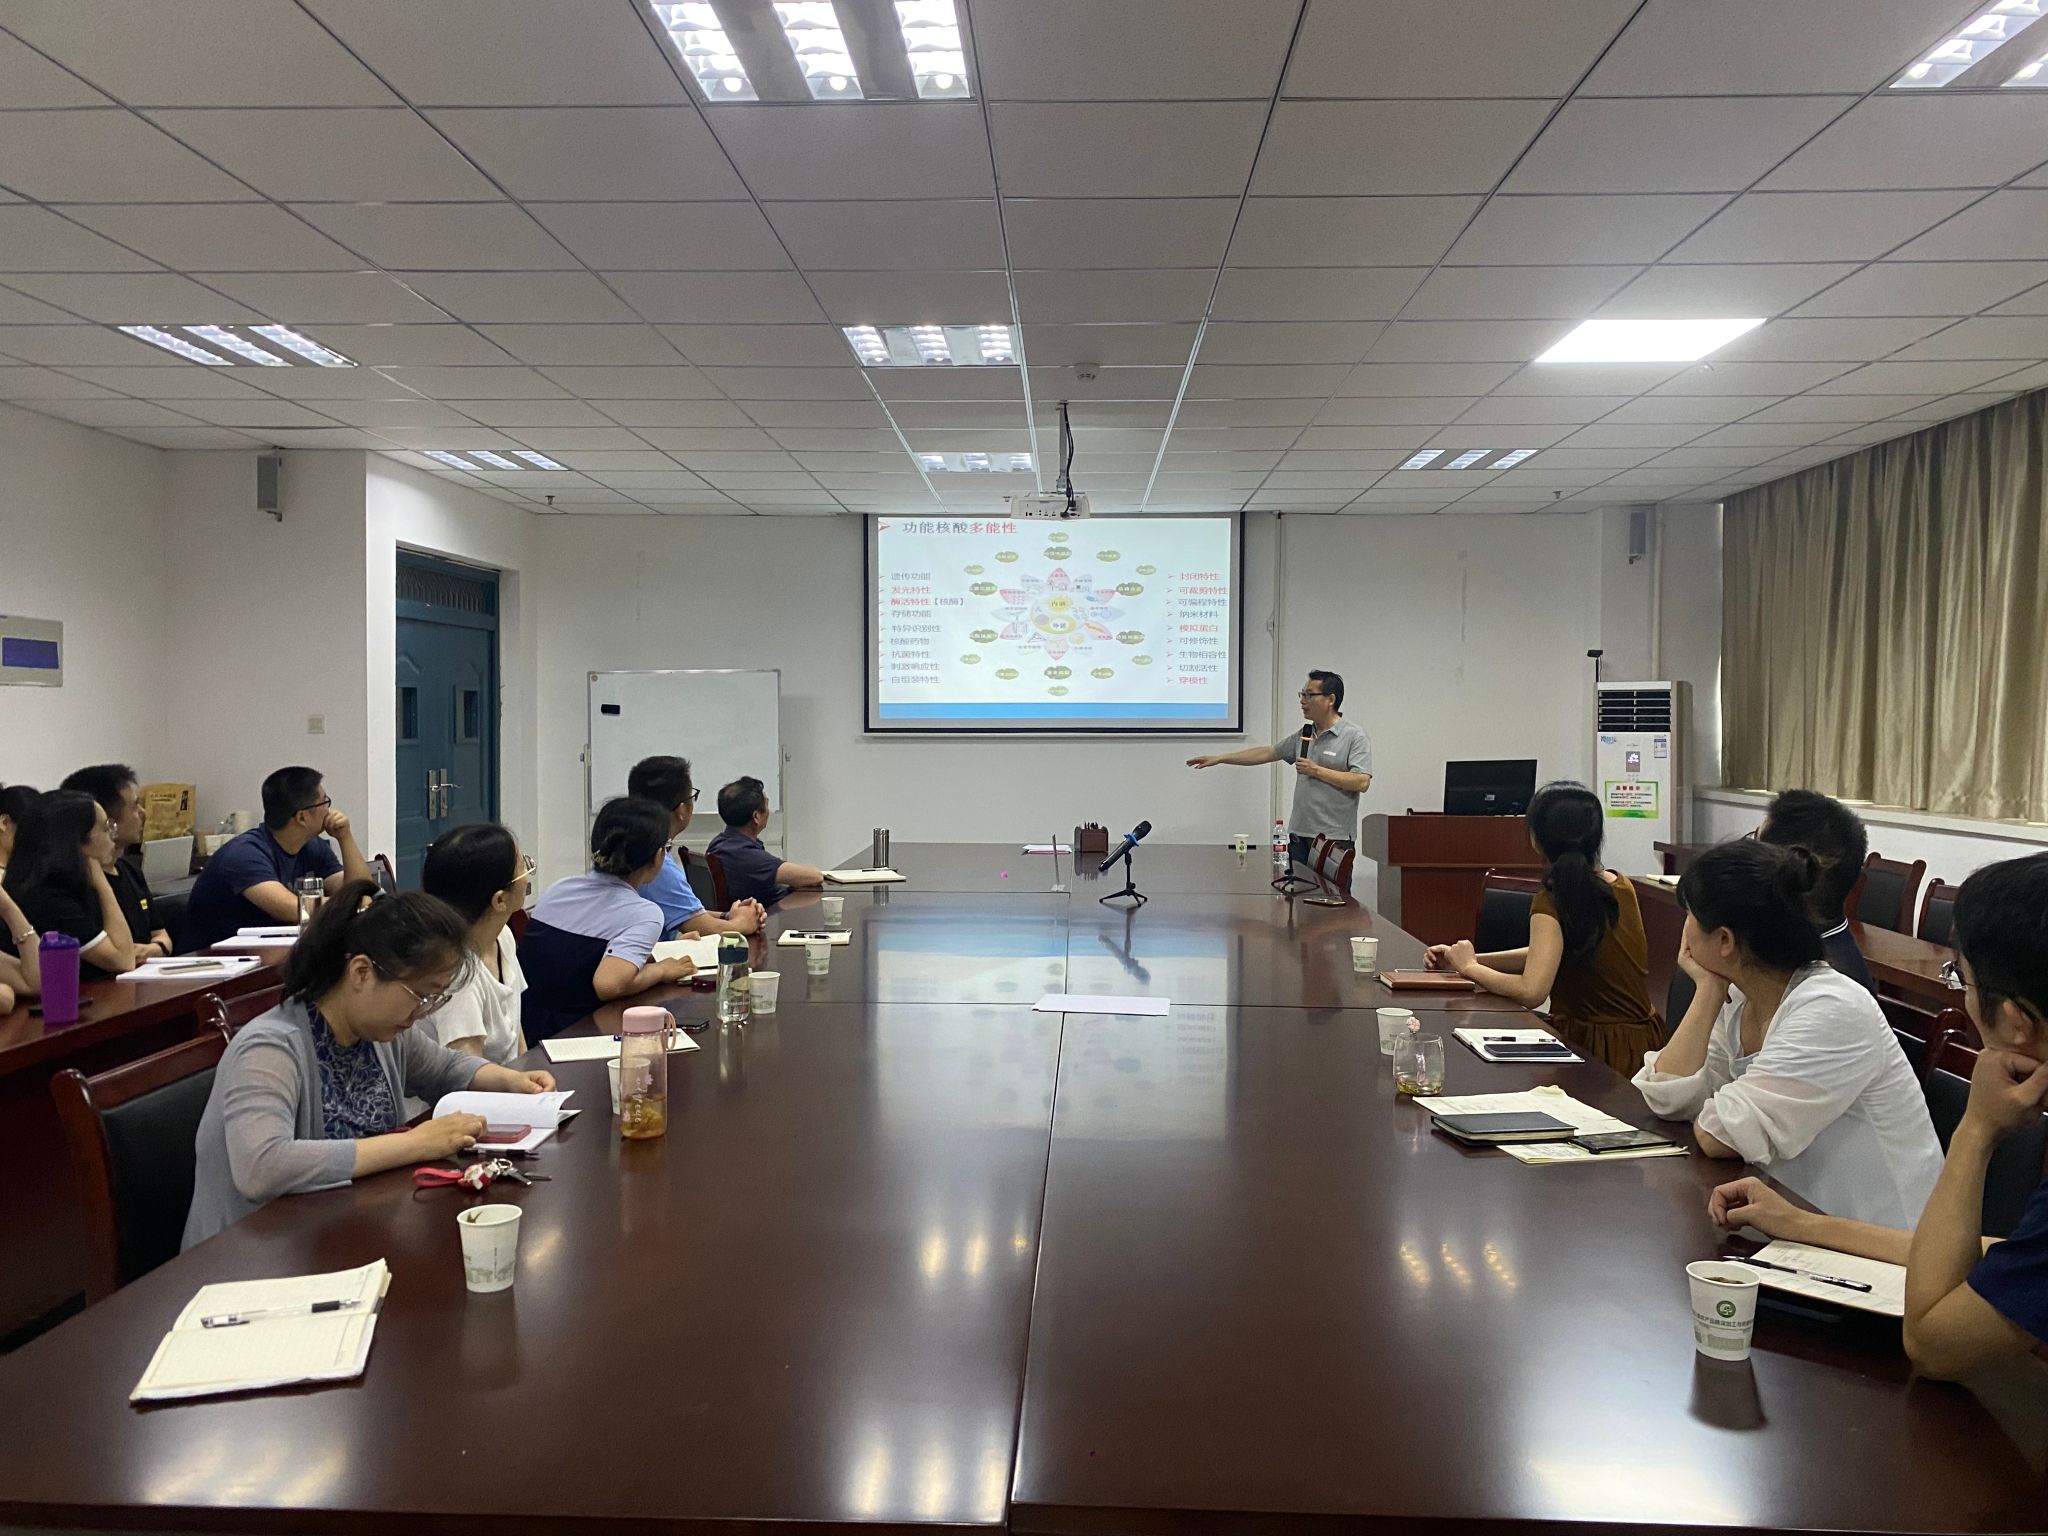 中国农业大学食品与营养健康学院许文涛教授应邀来院做学术报告